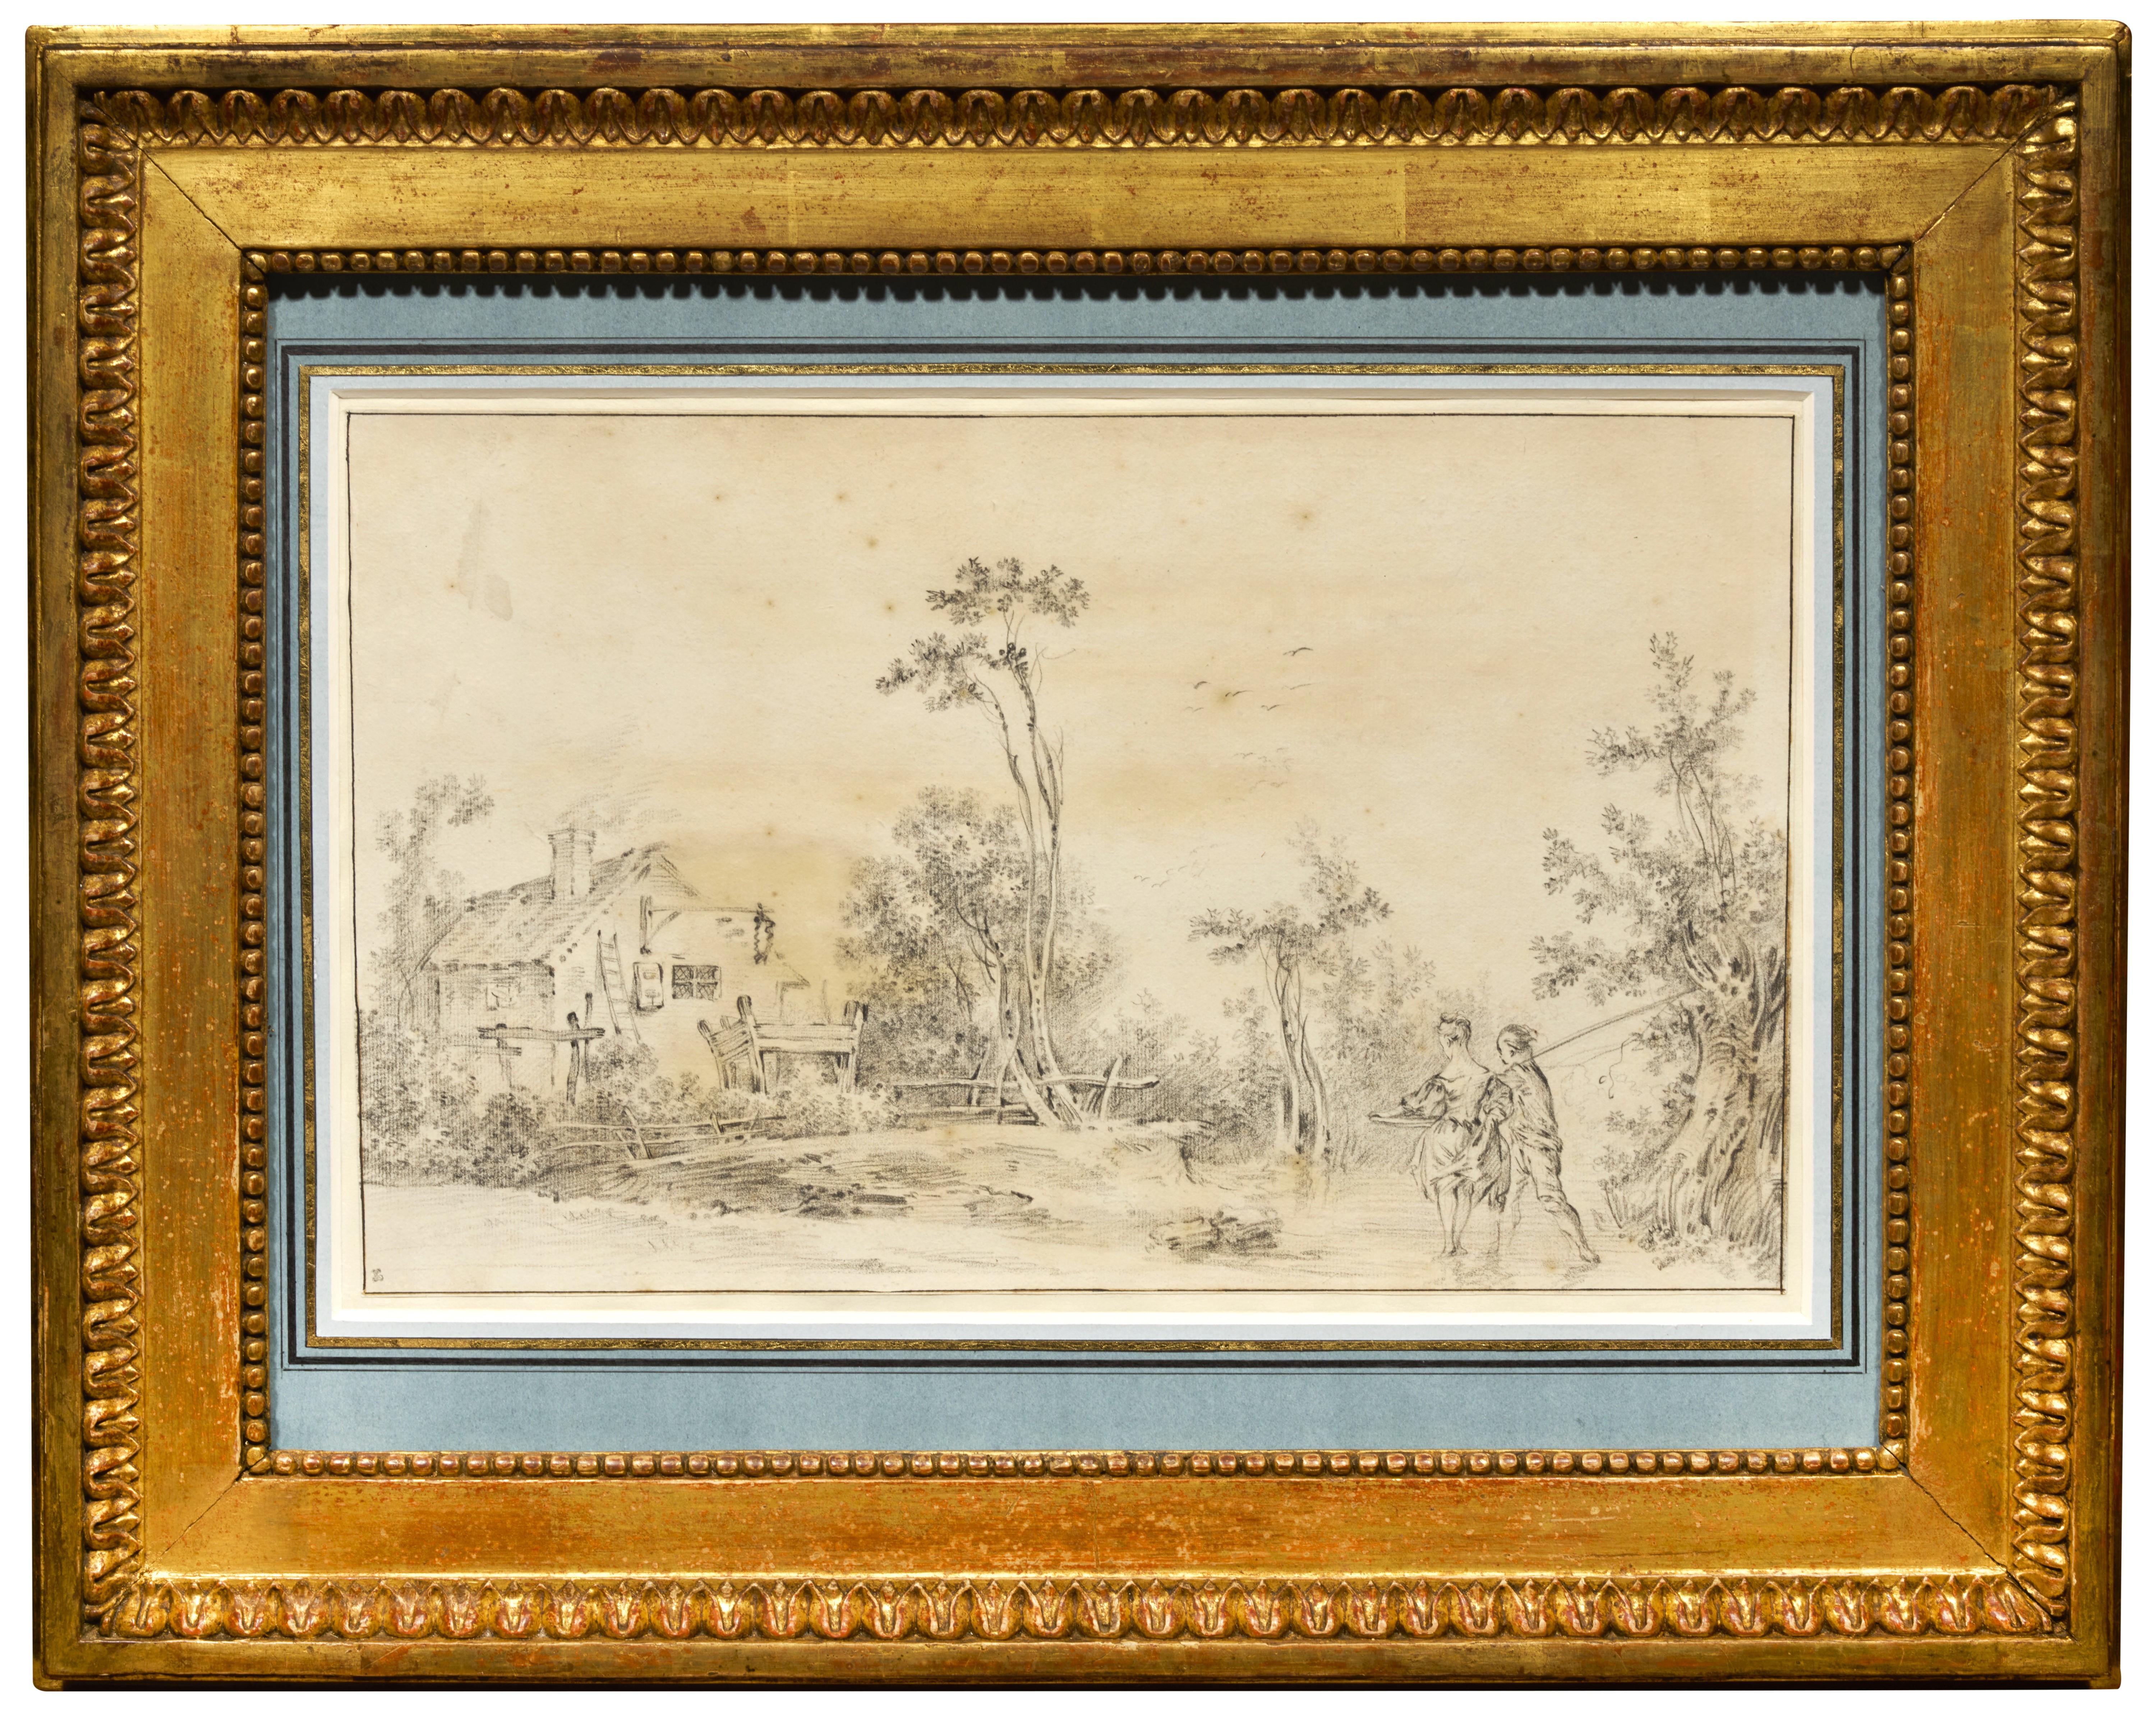 Un paysage rural, un dessin en partie attribué à Francois Boucher - Painting de François Boucher